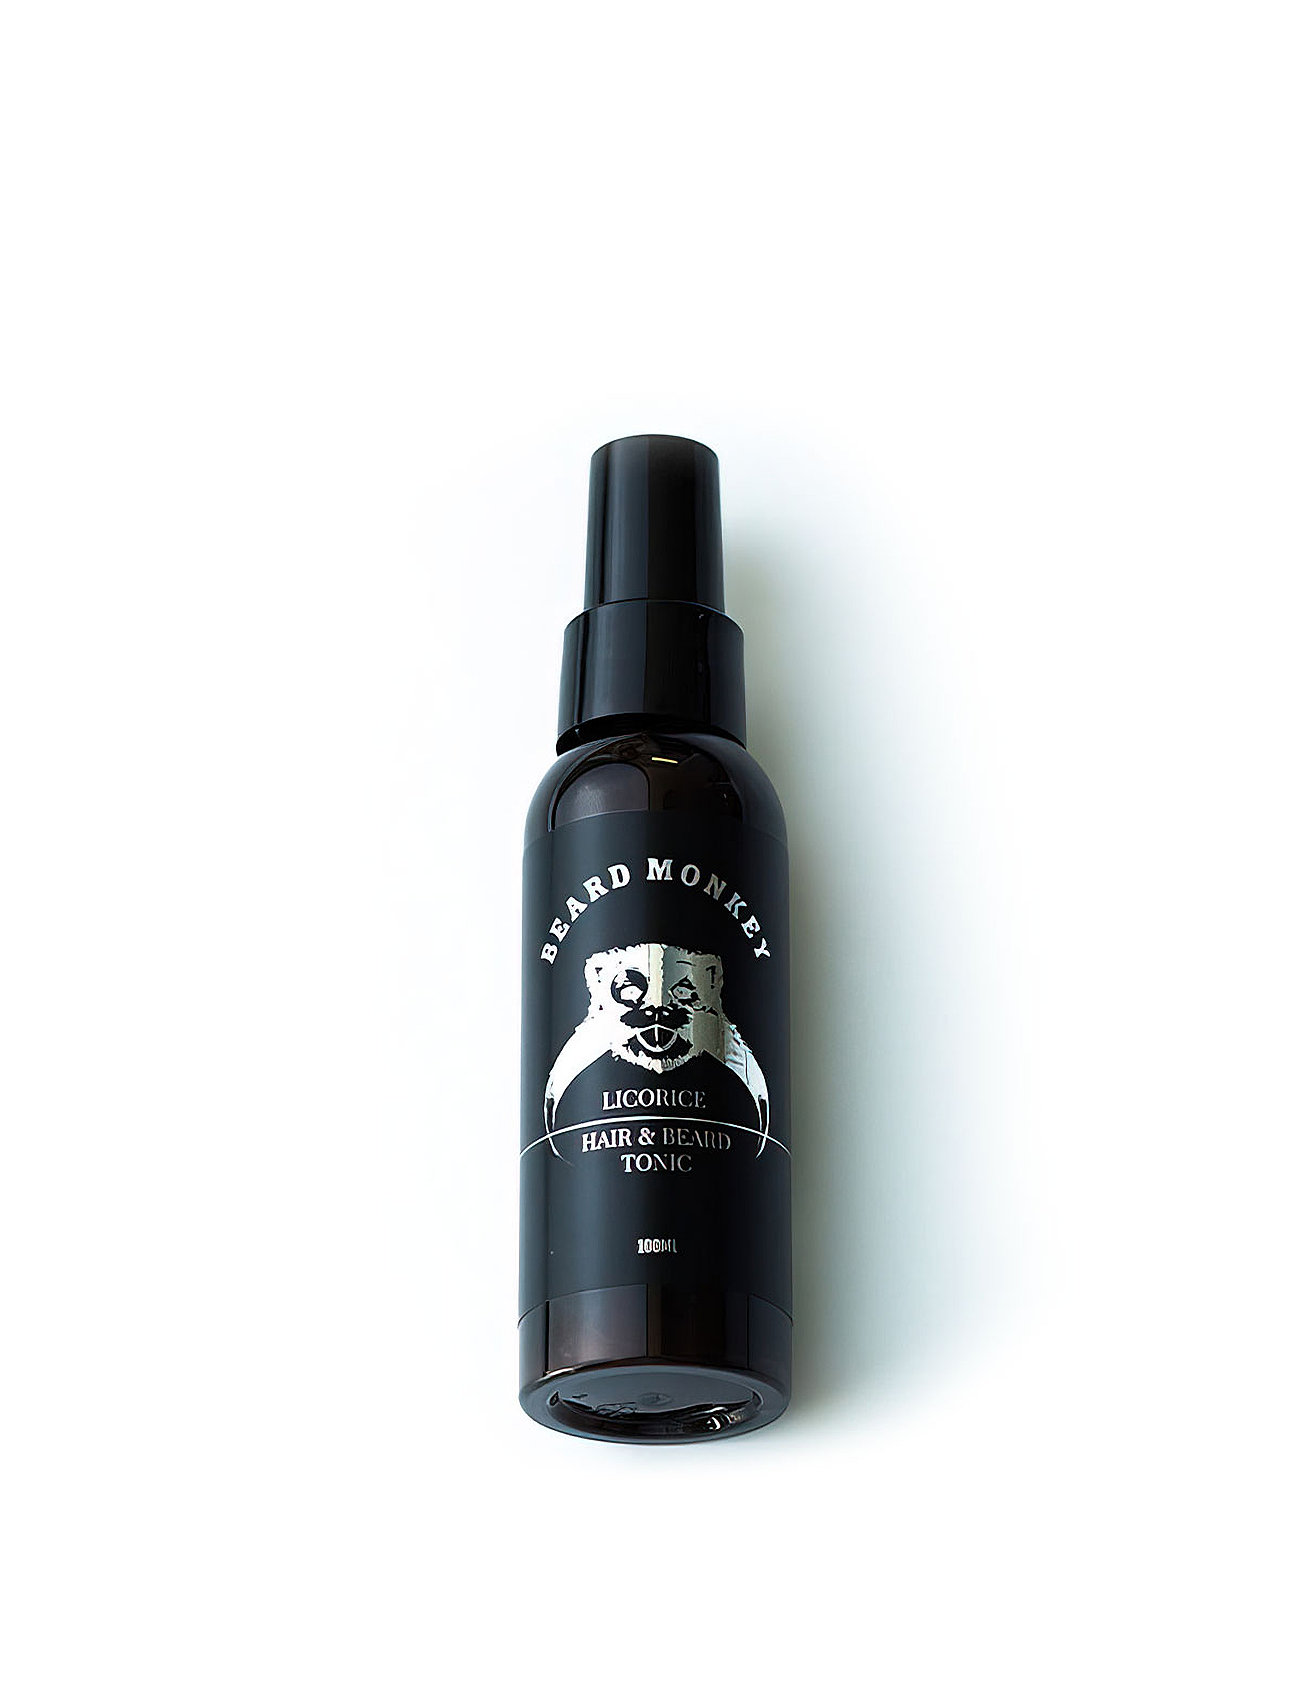 Hair & Beard Tonic Licorice Beauty Men Hair Styling Volume Spray Nude Beard Monkey